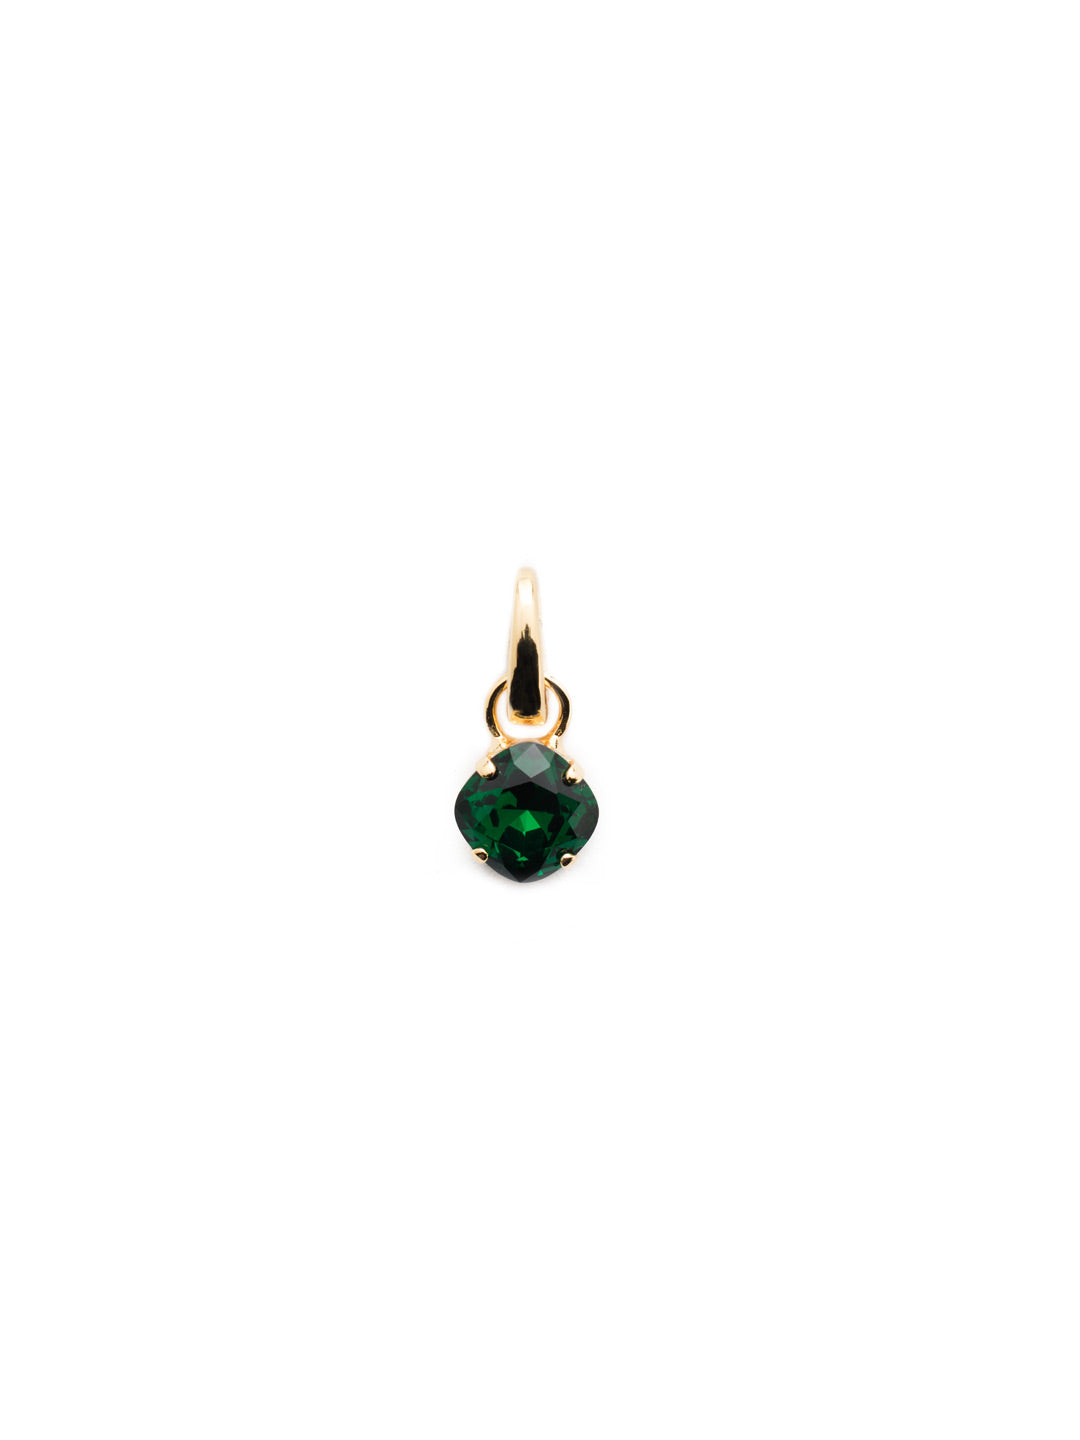 May Birthstone Emerald Charm - CEU1BGEME